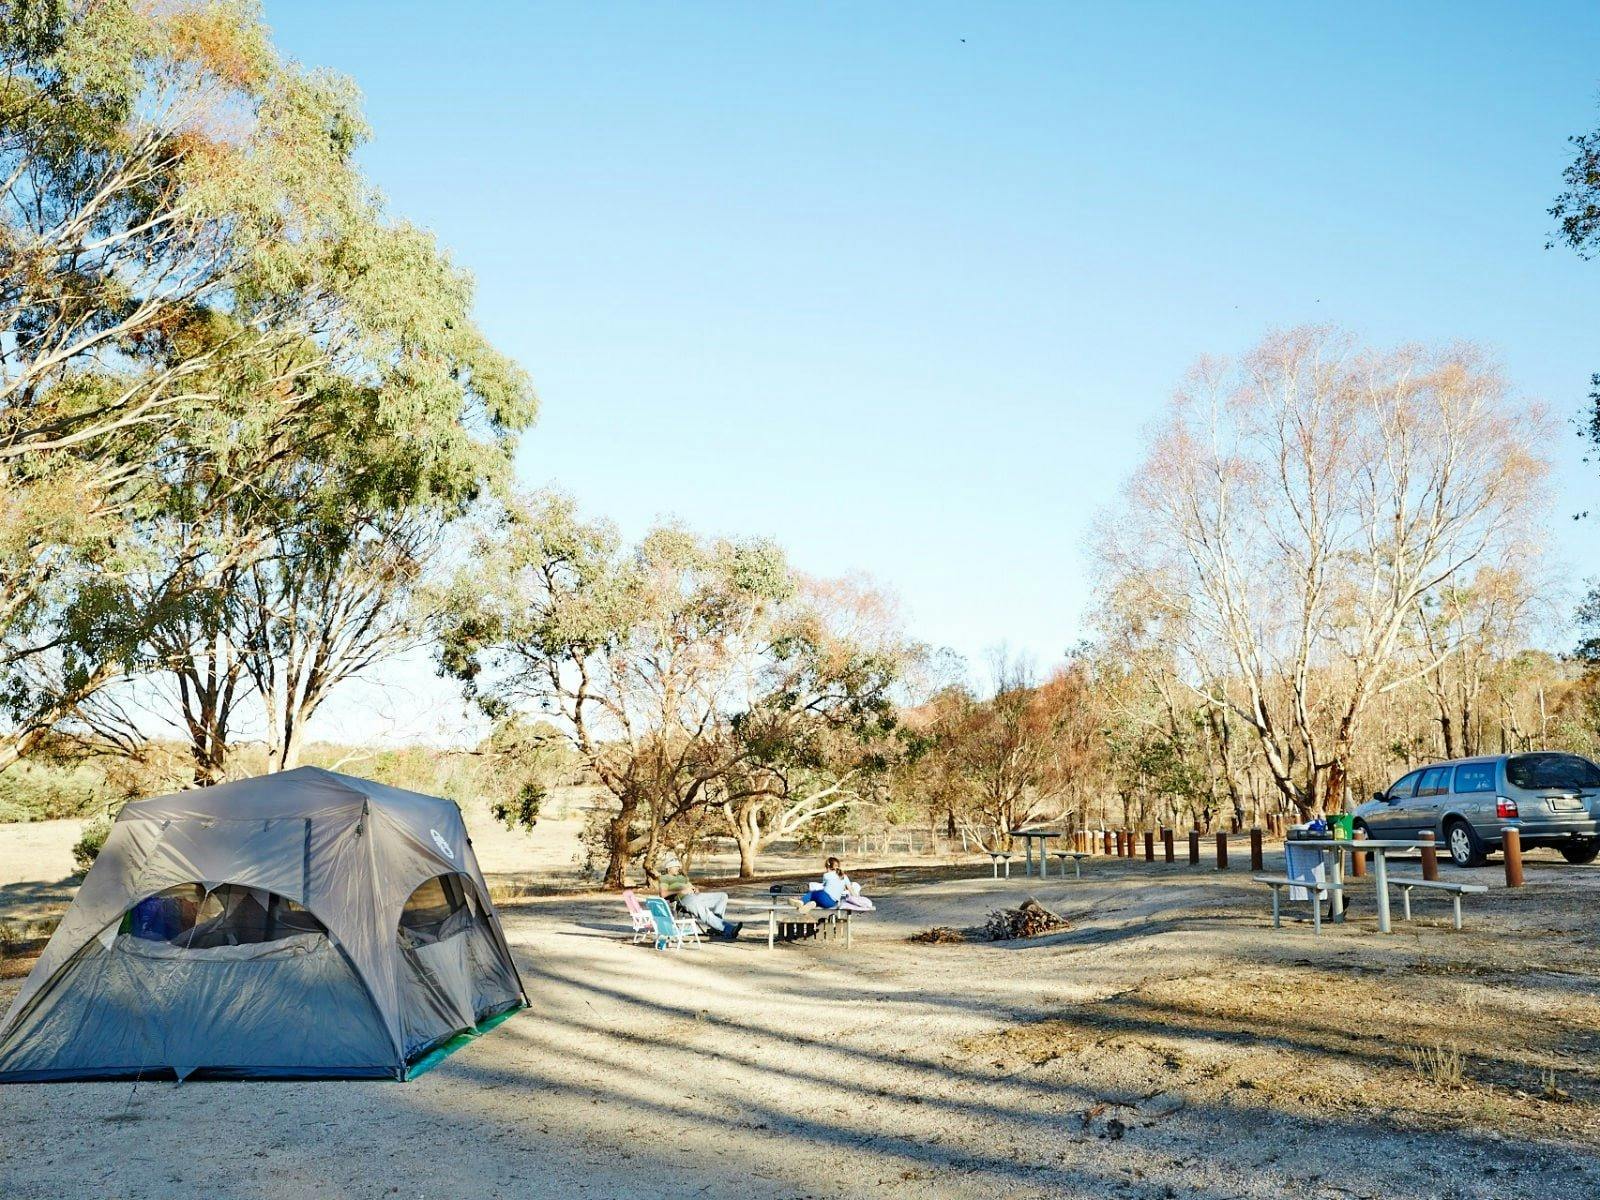 Camping at Wenhams Camp